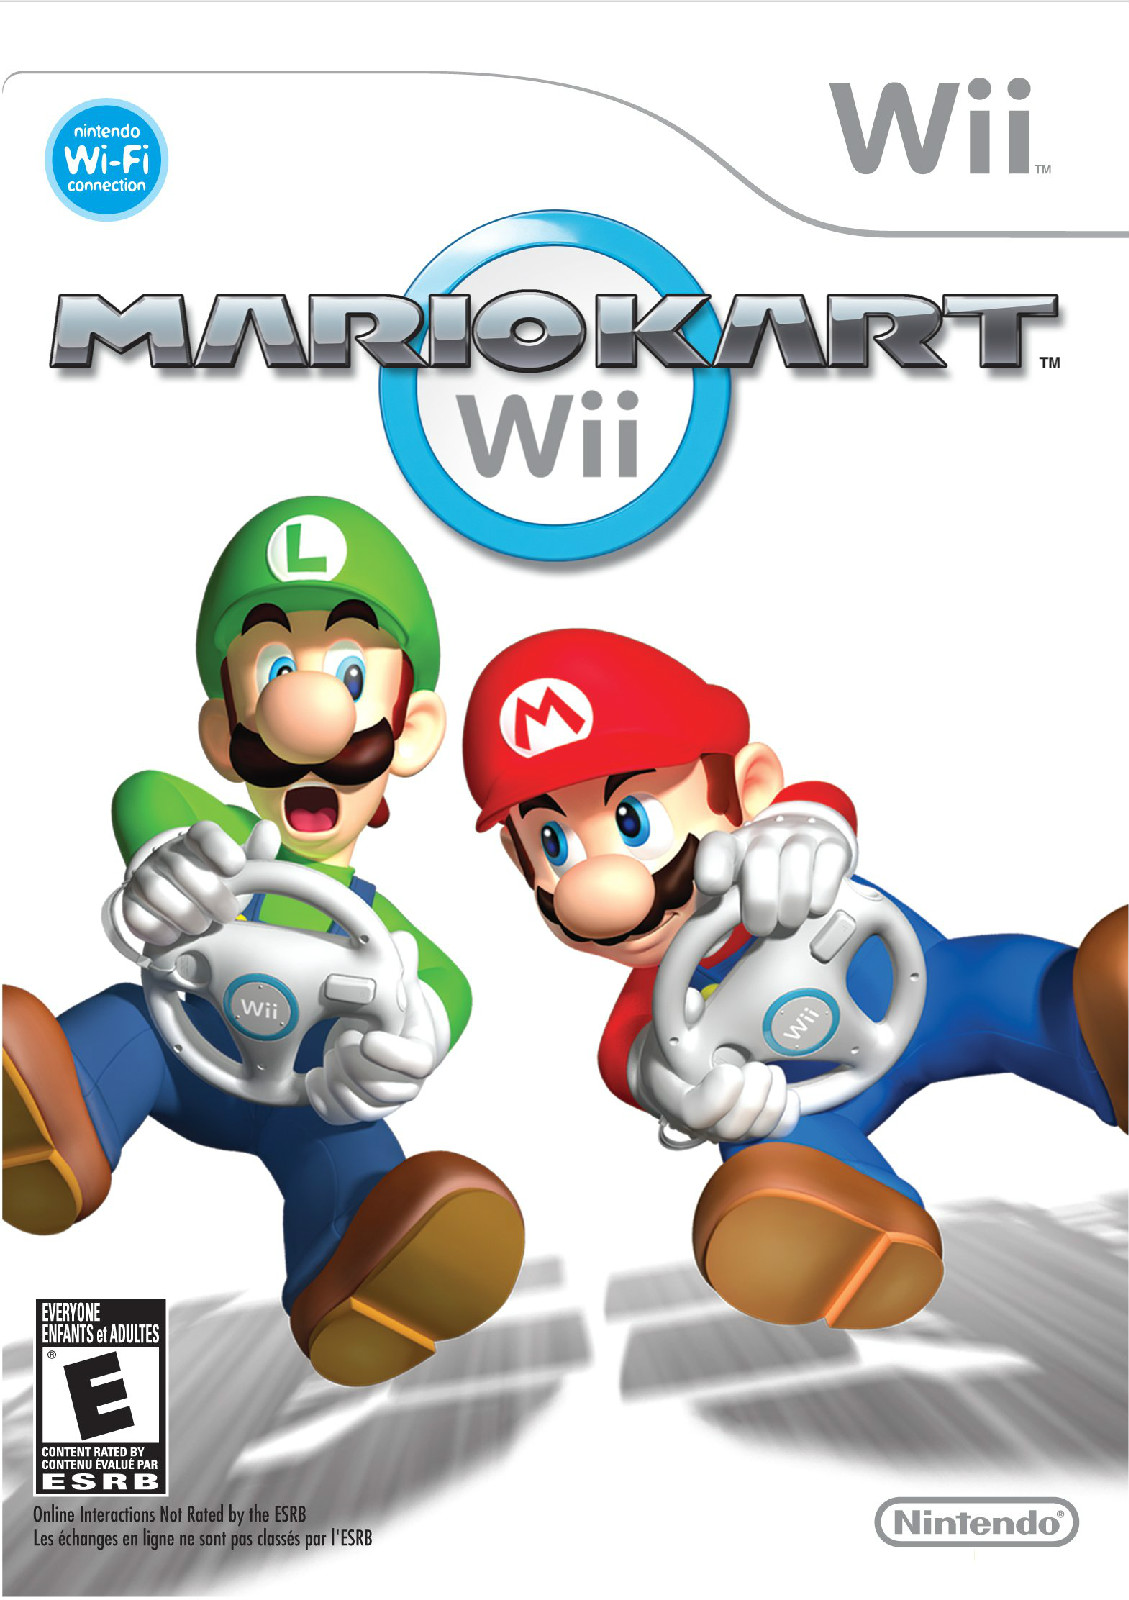 史上銷量最高賽車遊戲《馬里奧賽車Wii》